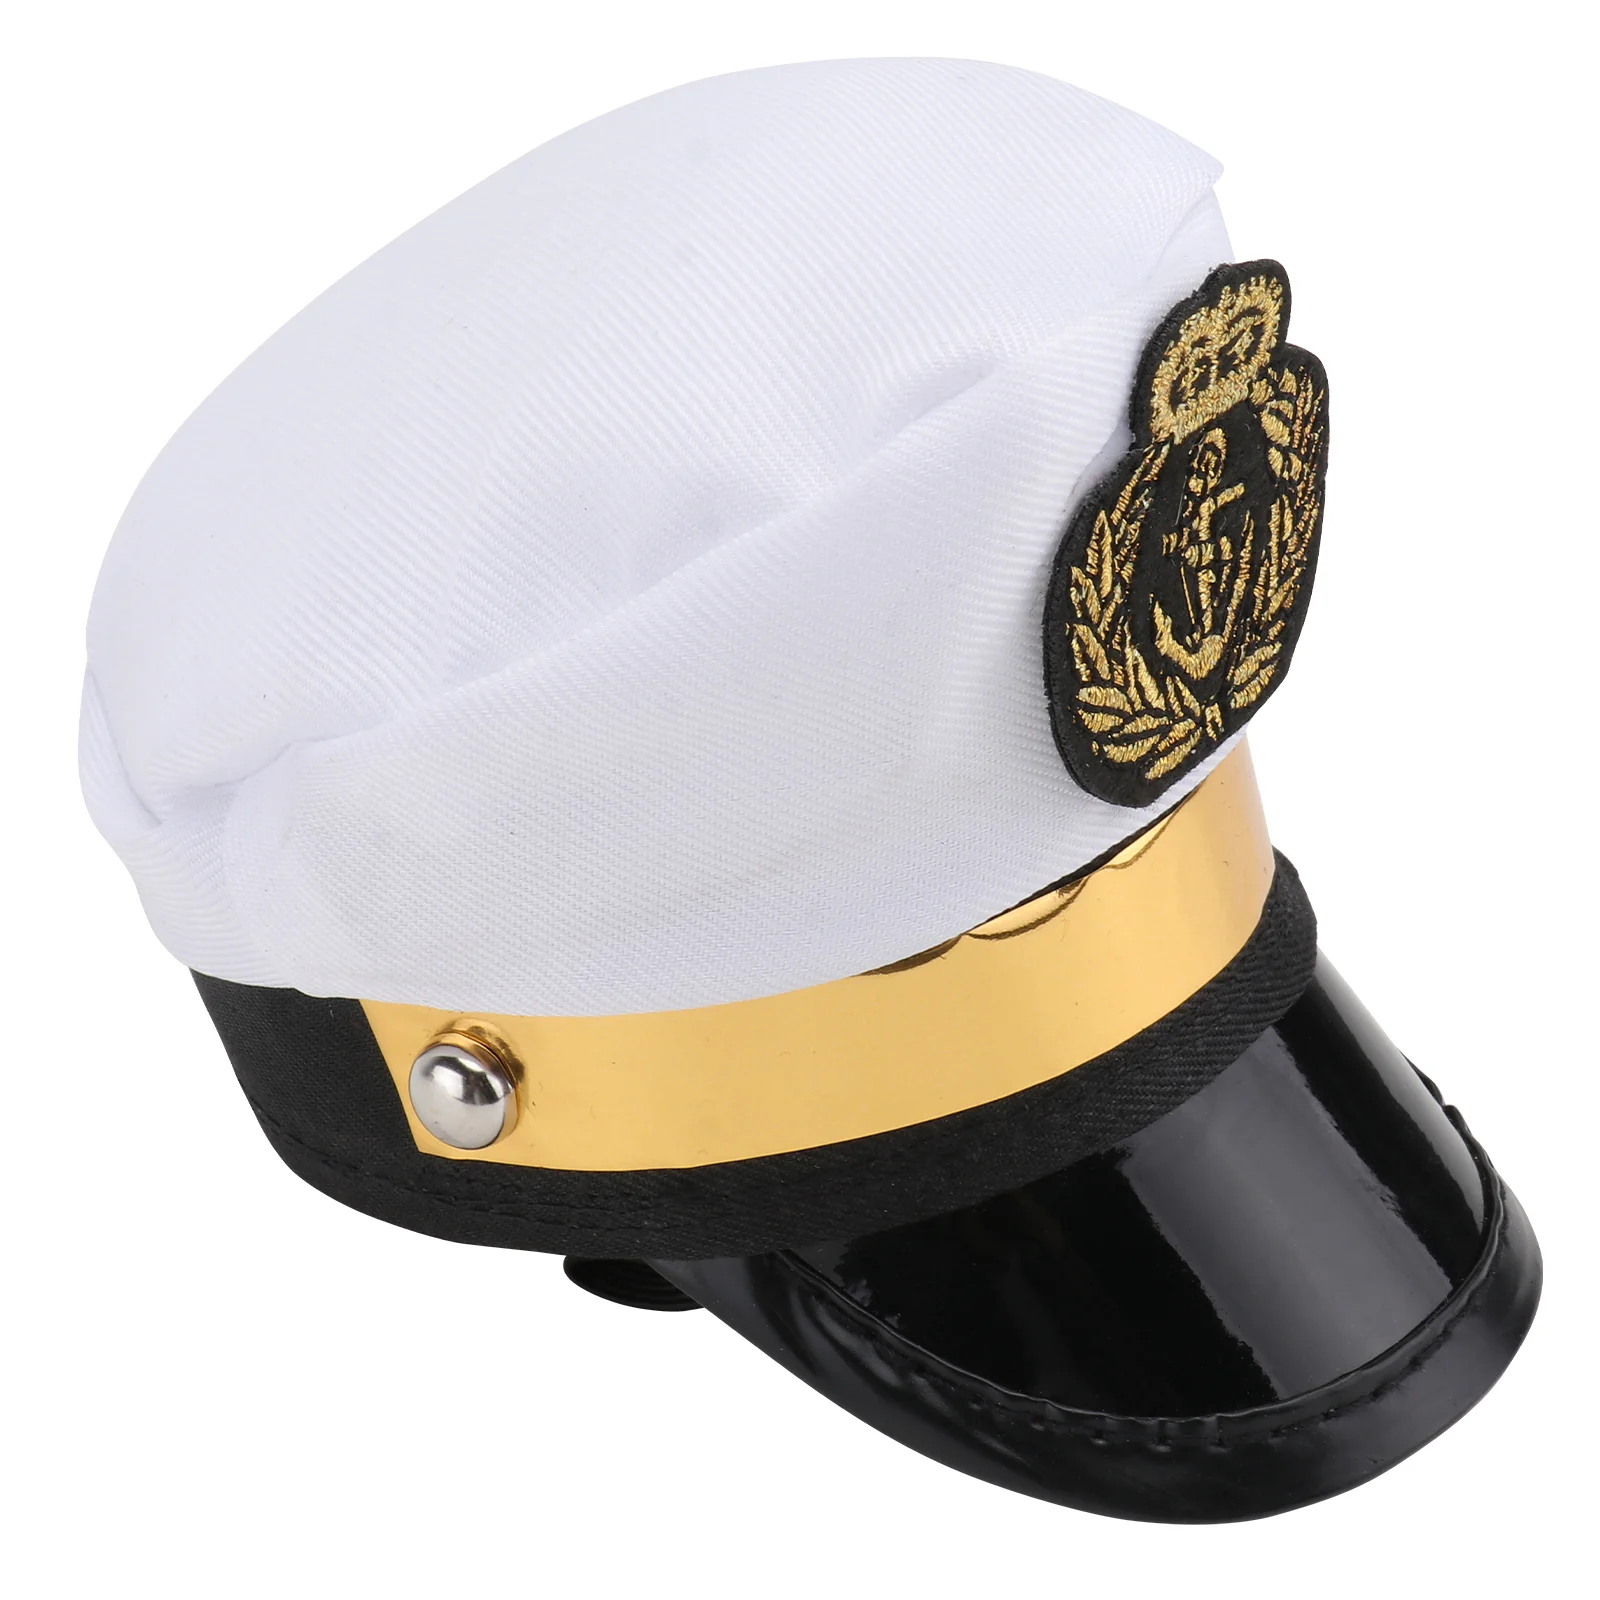 

Белая шляпа для: шляпа, шляпа для маленьких моряков, праздничный головной убор для щенка, кошки, флота, реквизит для маленьких праздничных фотографий, случайные цвета пуговиц